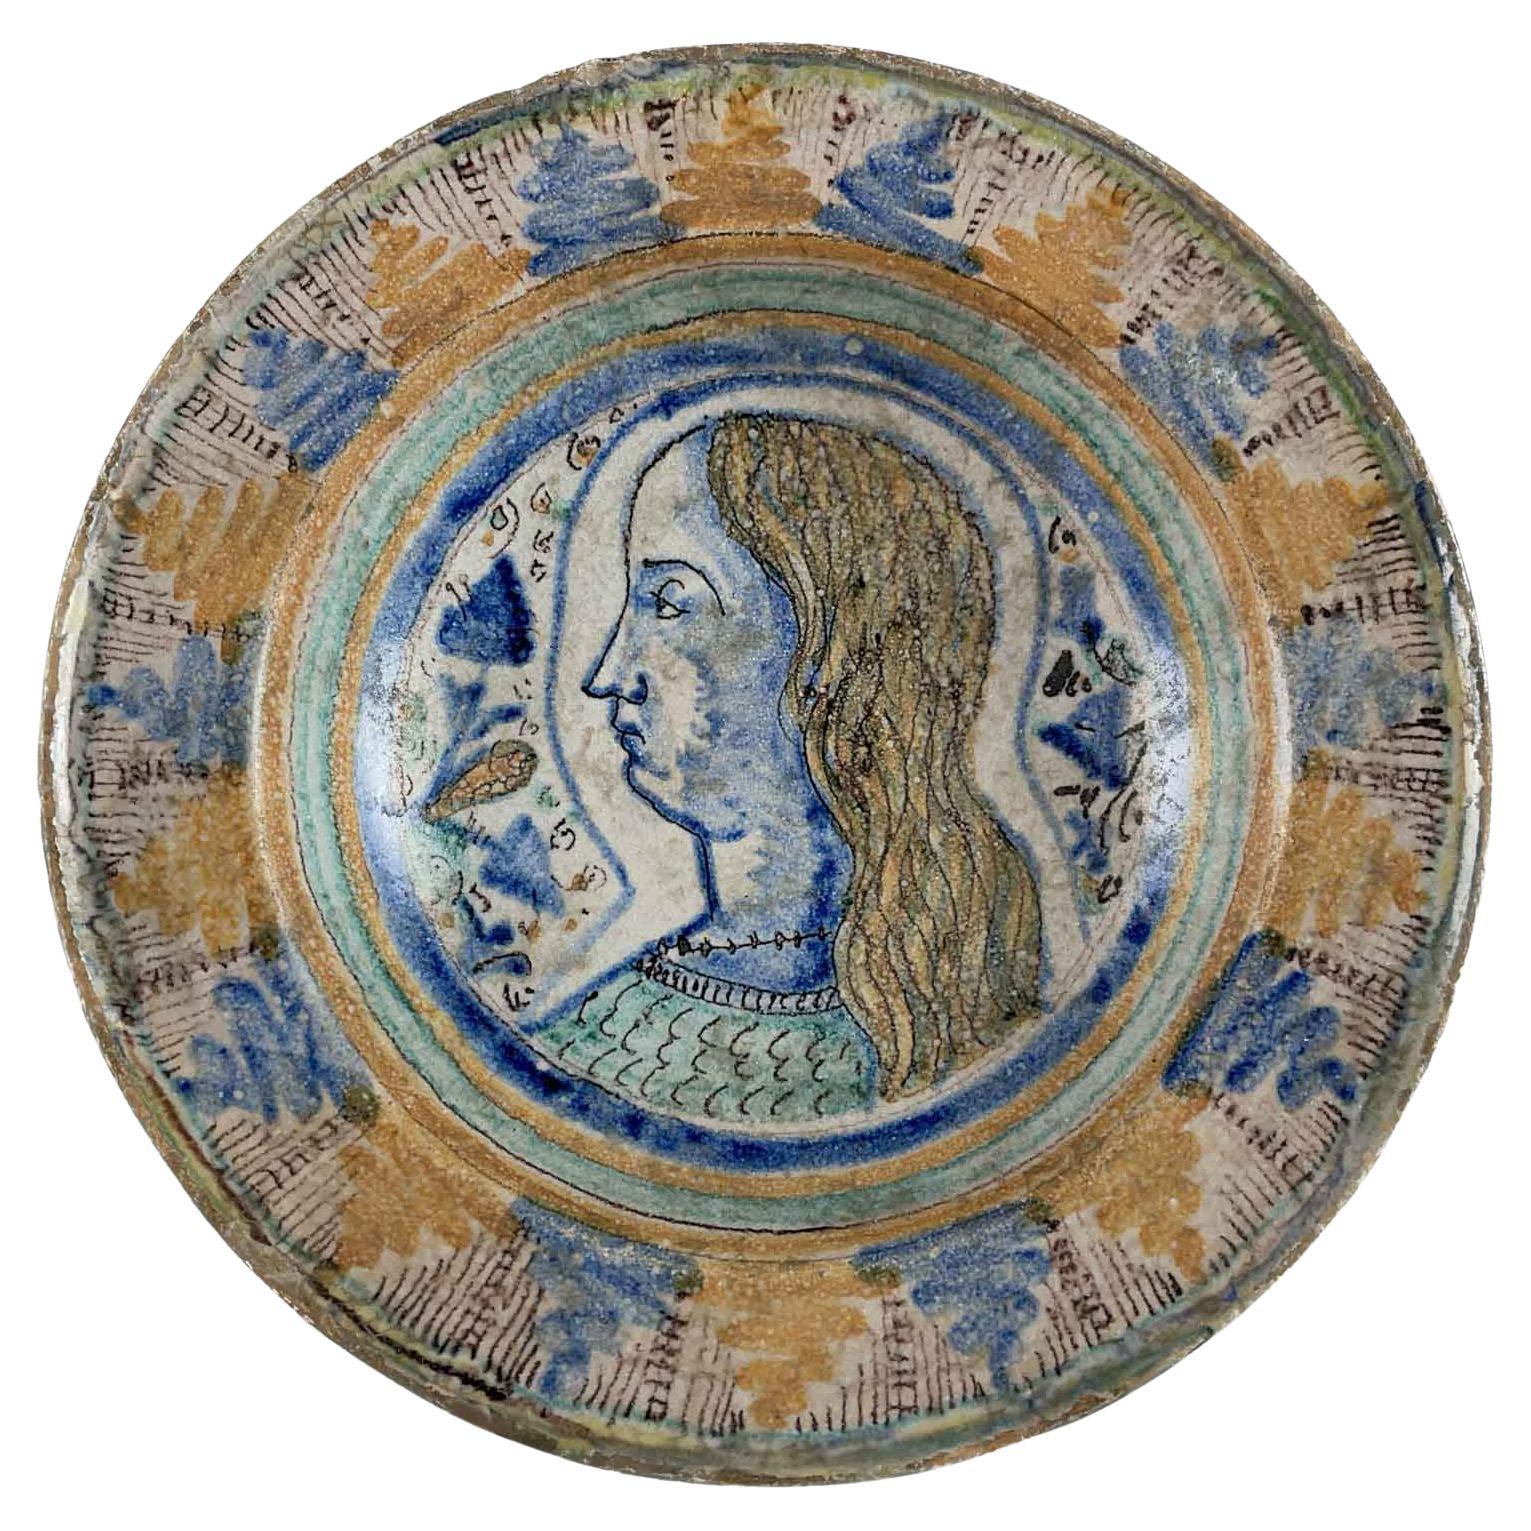 Plat italien en maïolique du milieu du XVIe siècle, peint à la main en bleu et jaune ocre, avec un portrait de jeune homme de profil au centre. Les couleurs jaunâtres et bleues de la maïolique sont peintes dans une élégante alternance de motifs